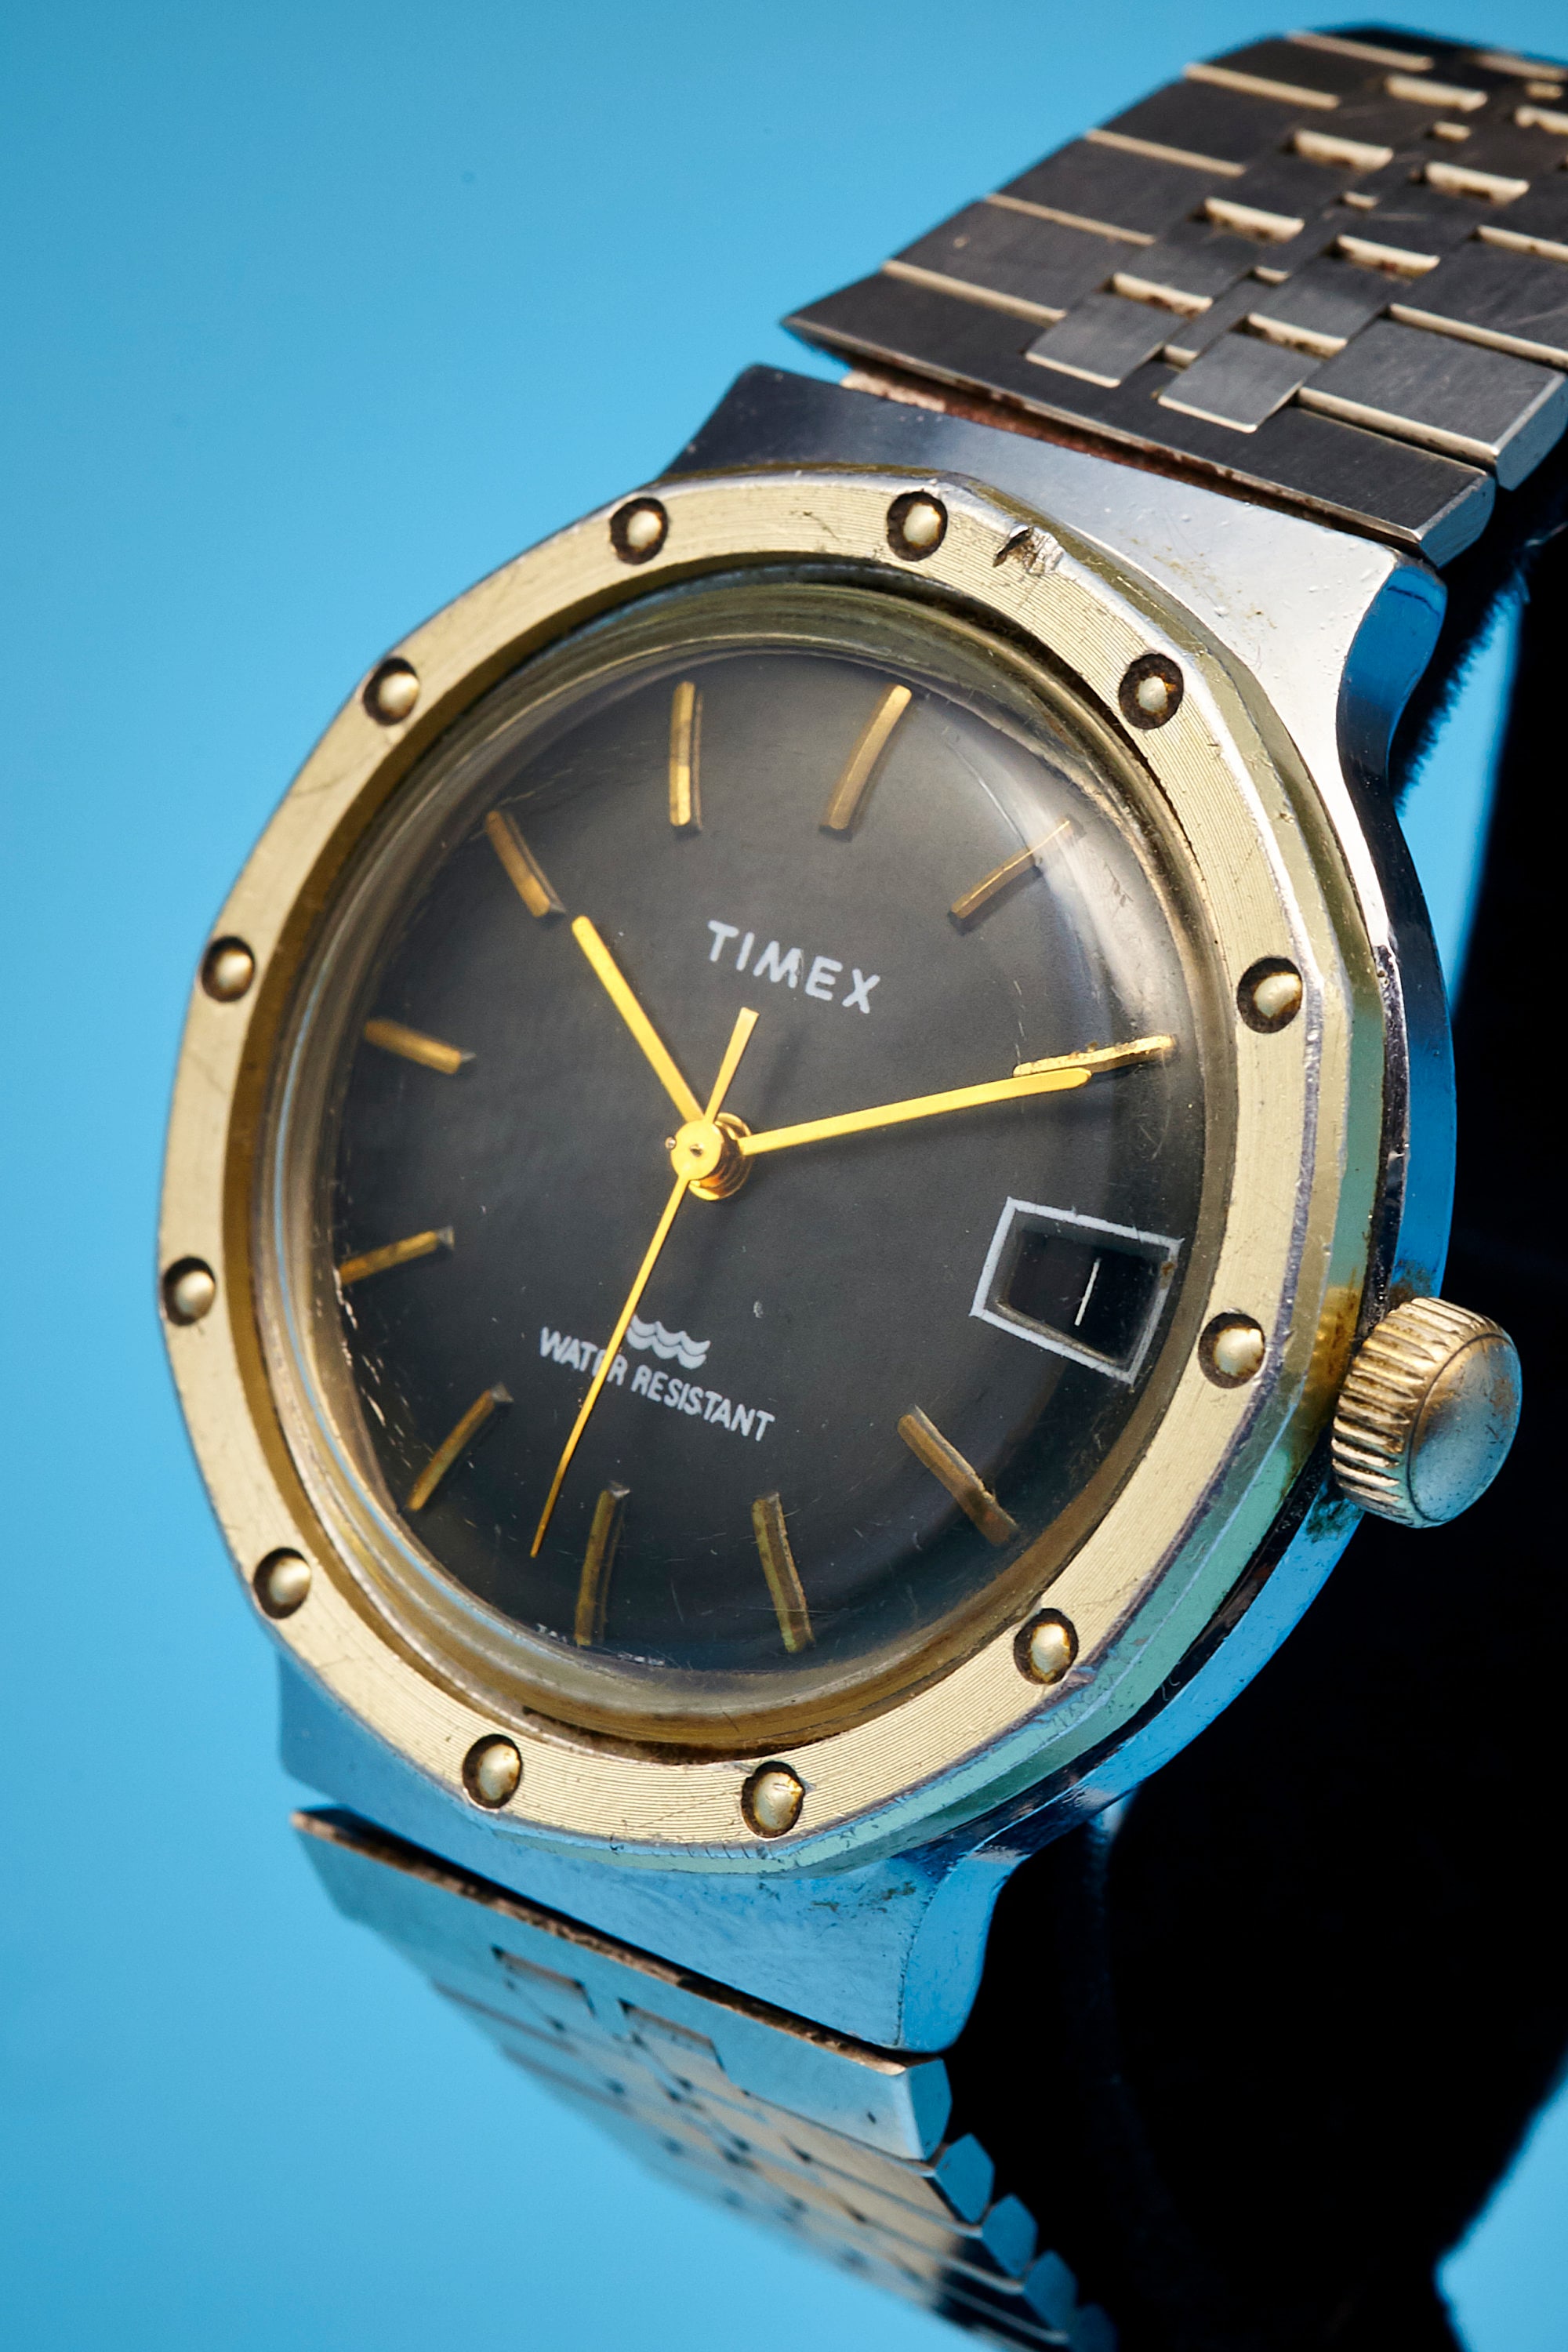 Restored Men's/Unisex Vintage 70s British Timex Sports Watch • Big 39mm  Case • Mid Century Modern • Stainless Steel • Choice of Watchbands